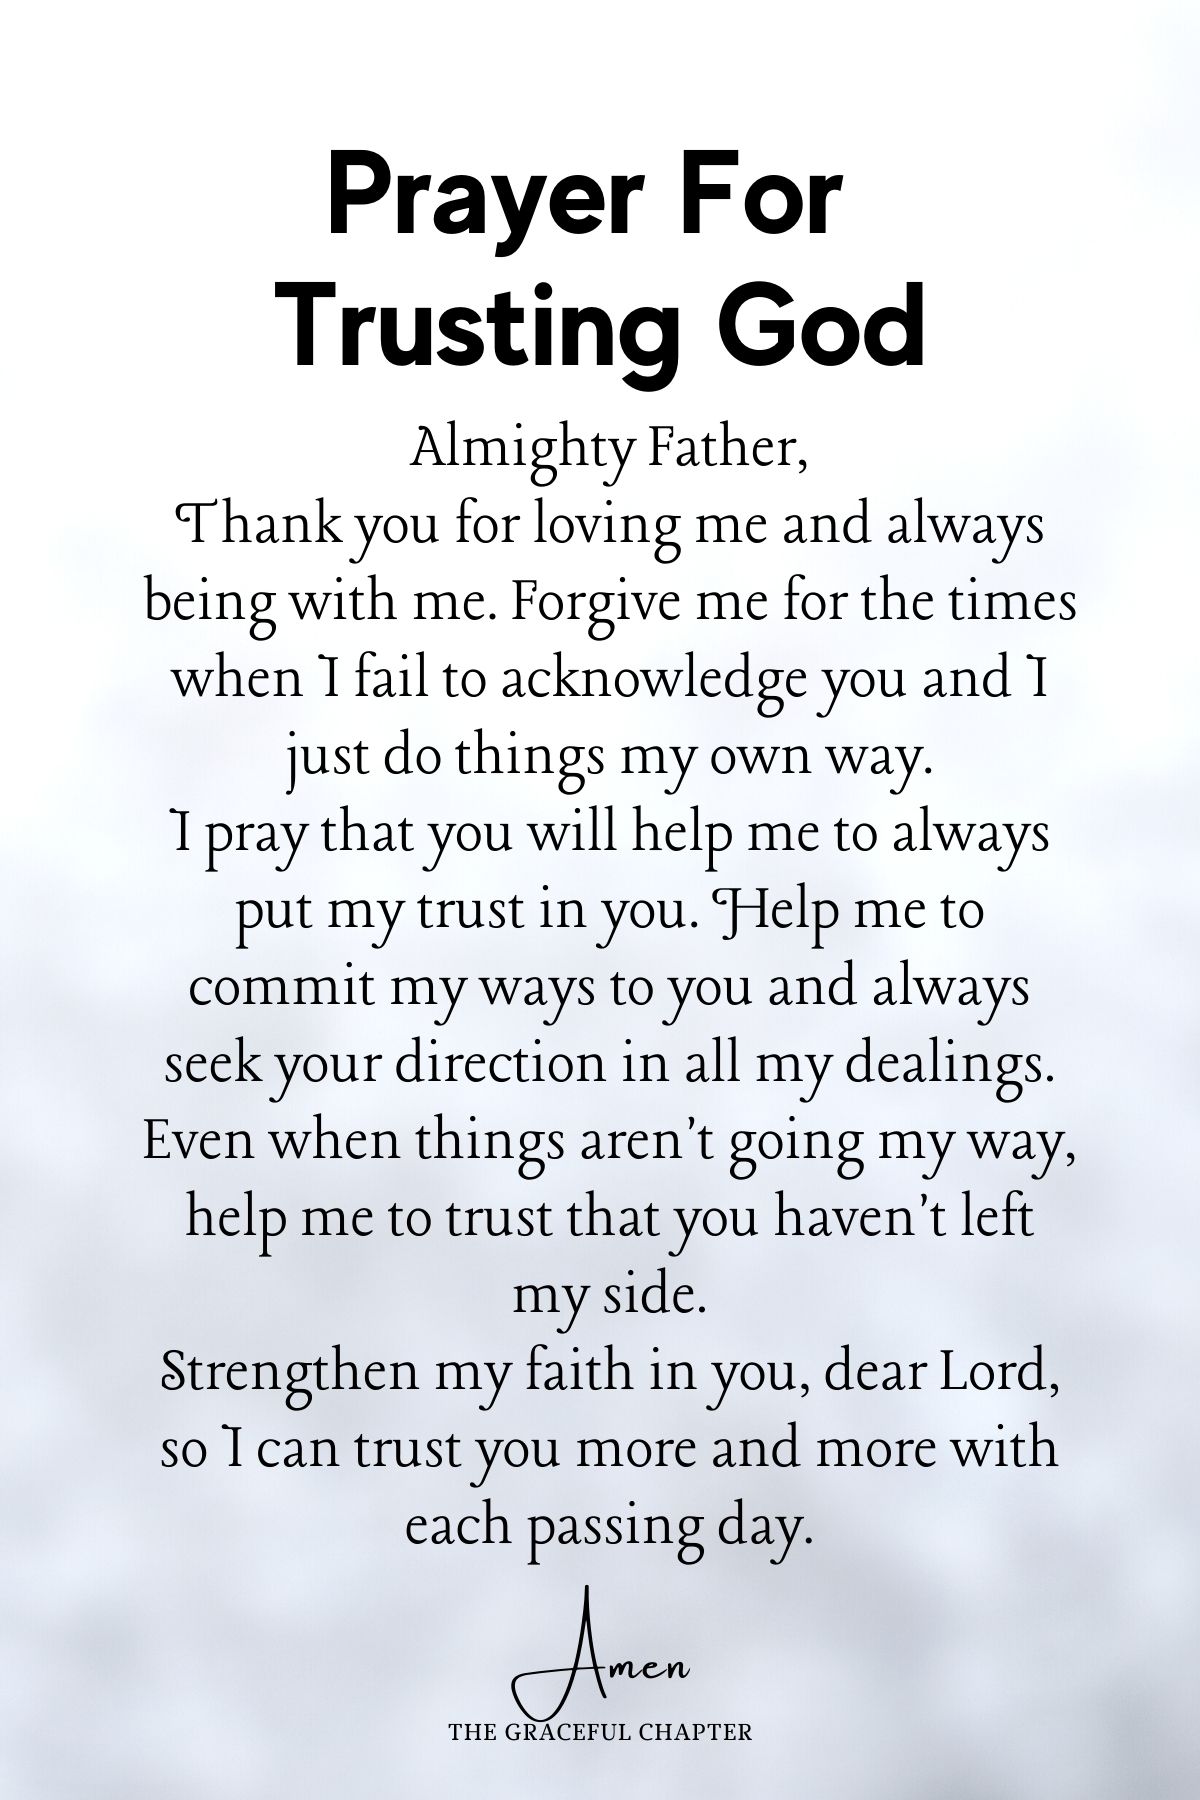 Prayer for trusting God